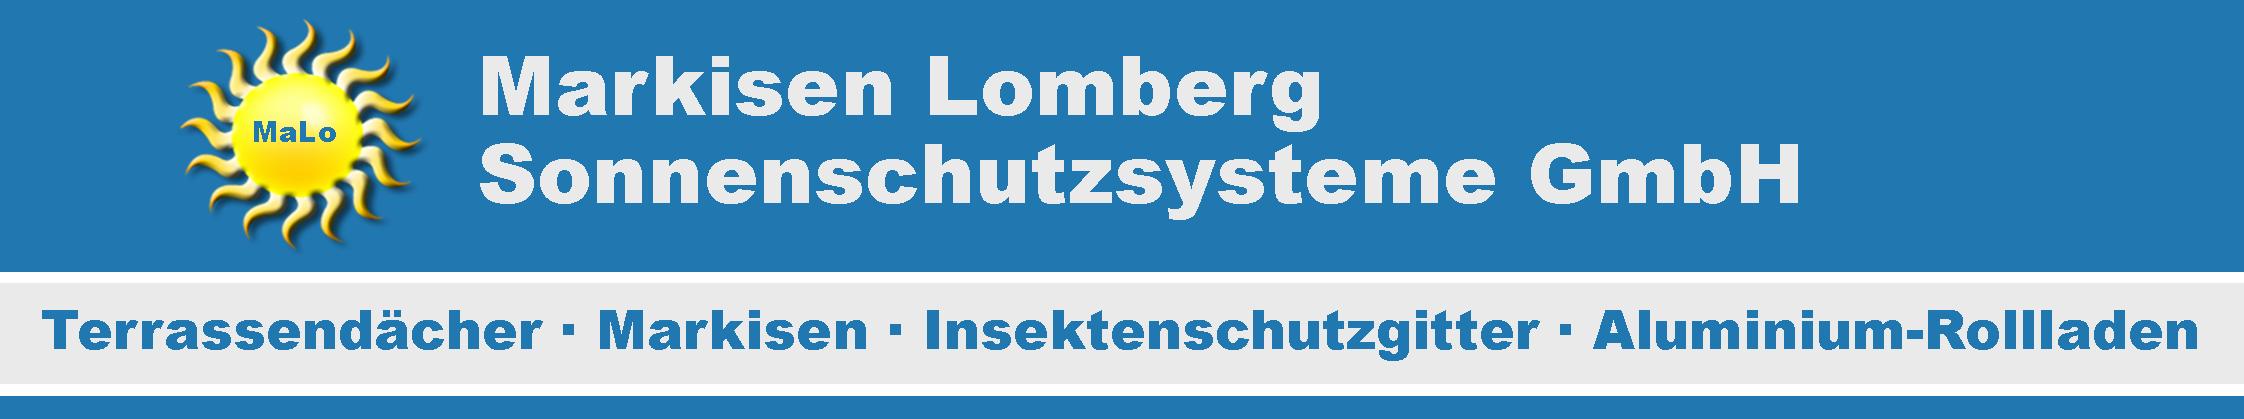 lomberg_logo_2.jpg